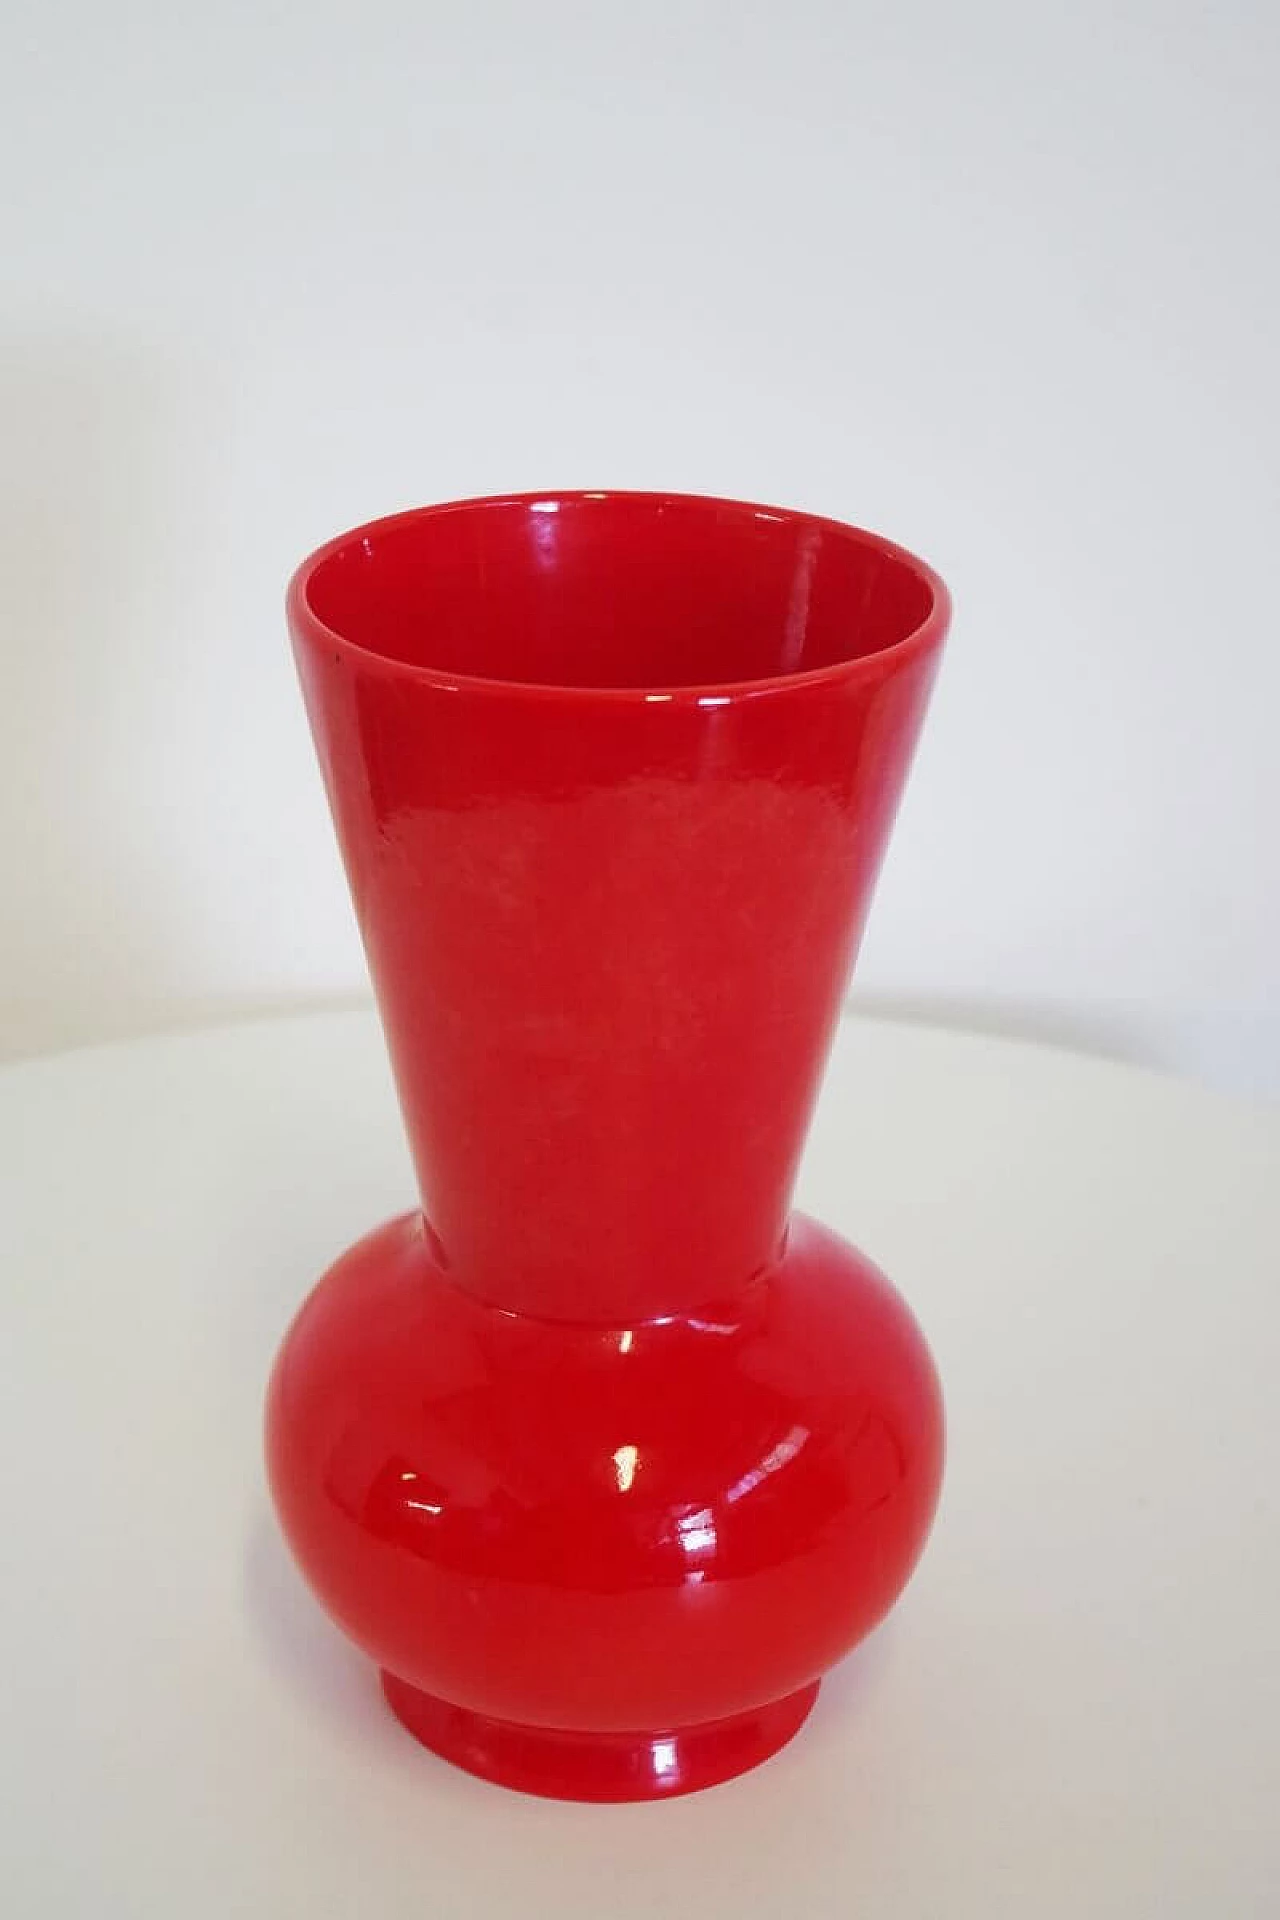 Pozzi orange ceramic vase, 1970s 1377210